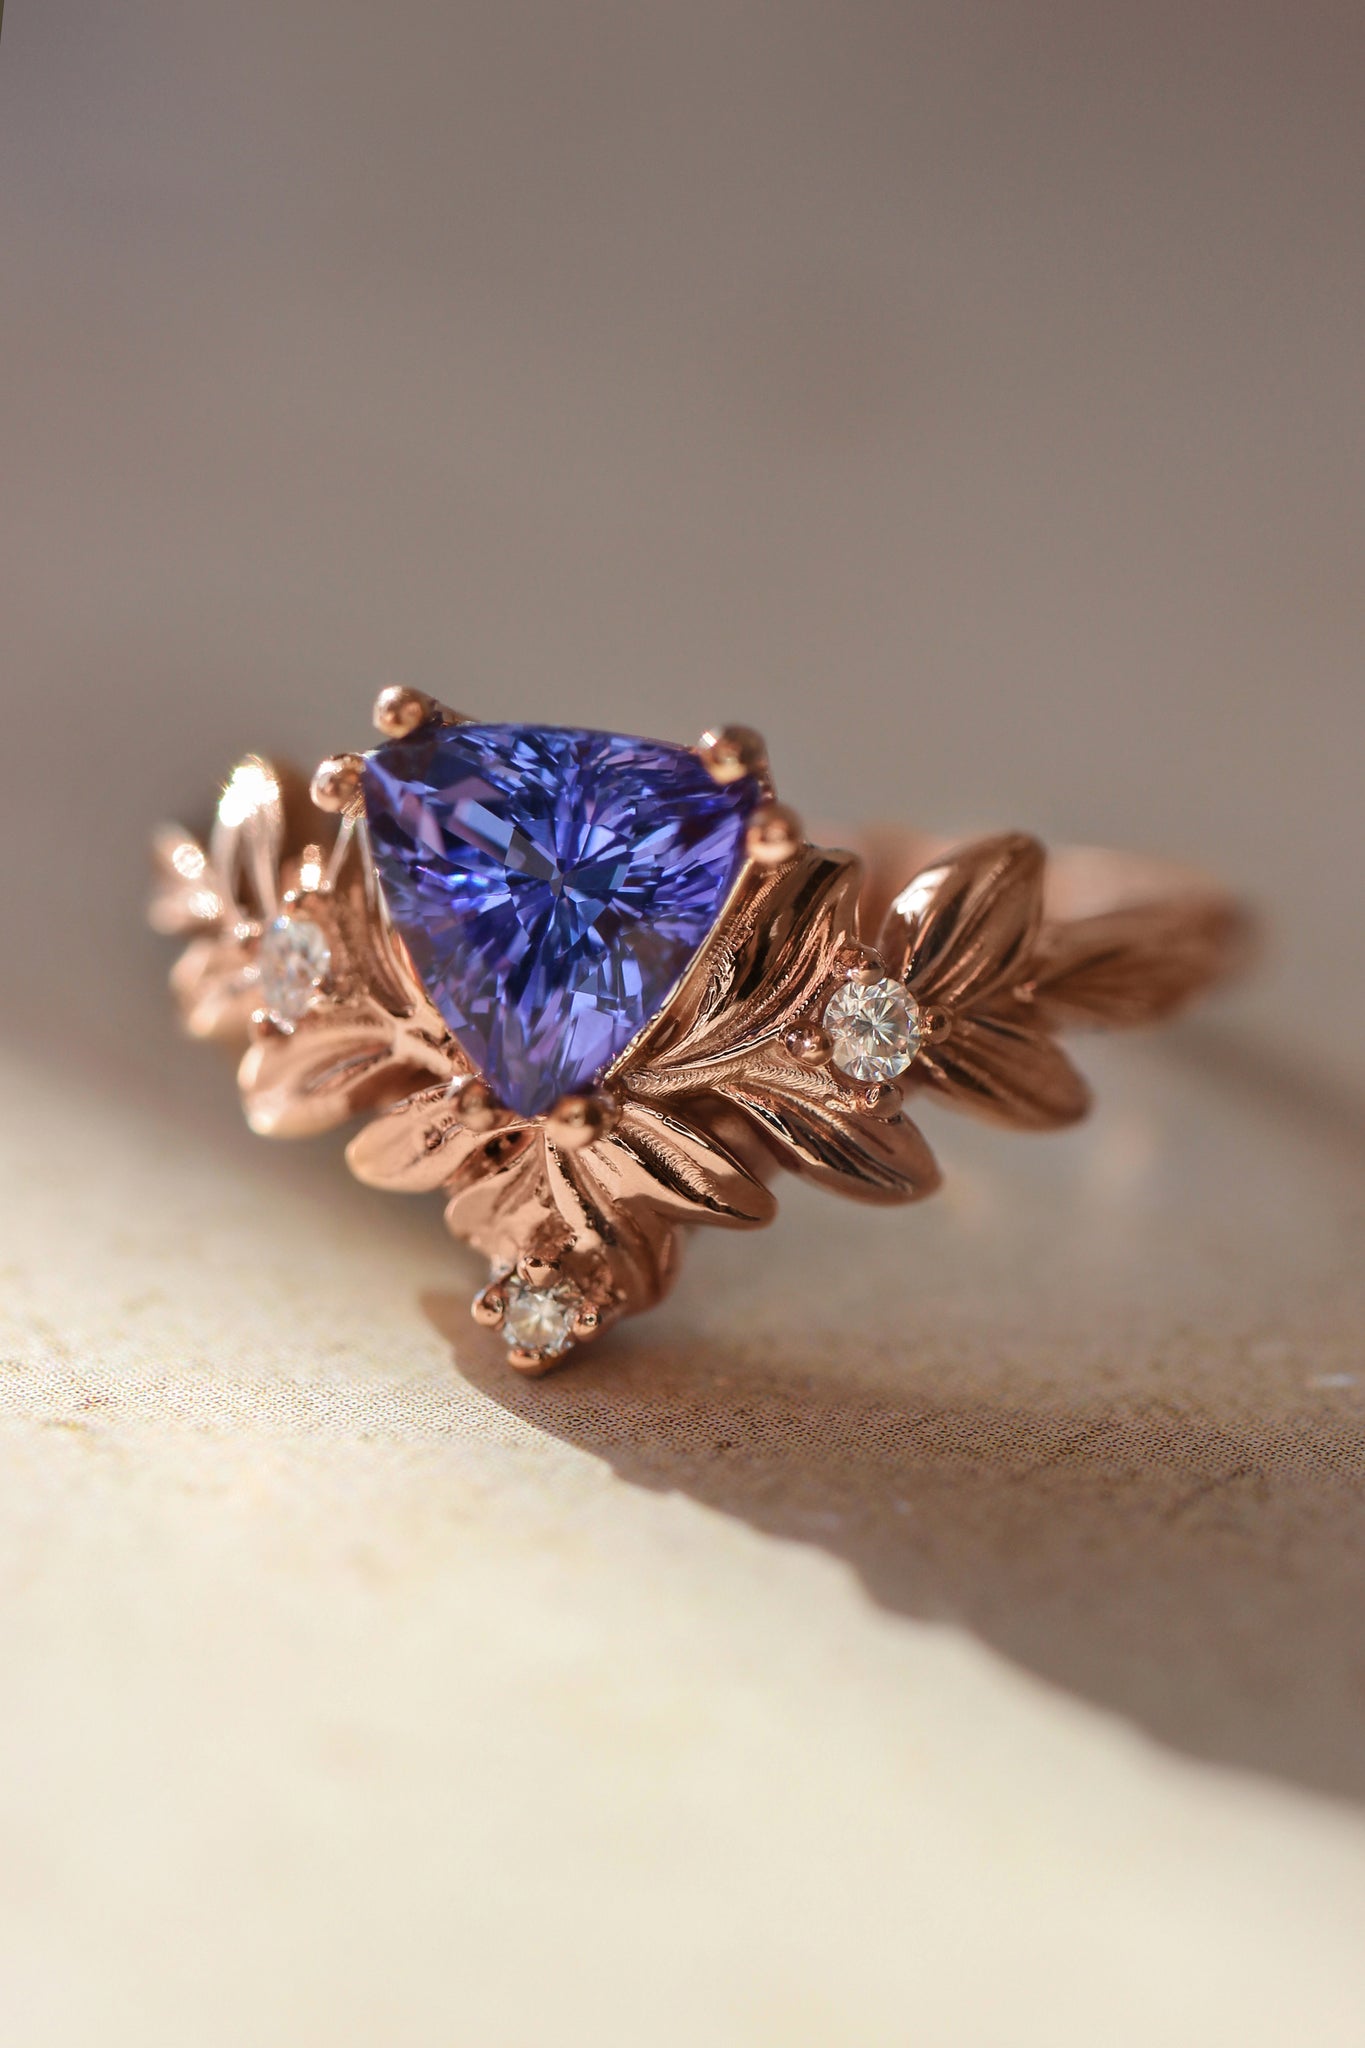 Trillion cut tanzanite engagement ring, leaf ring - Eden Garden Jewelry™